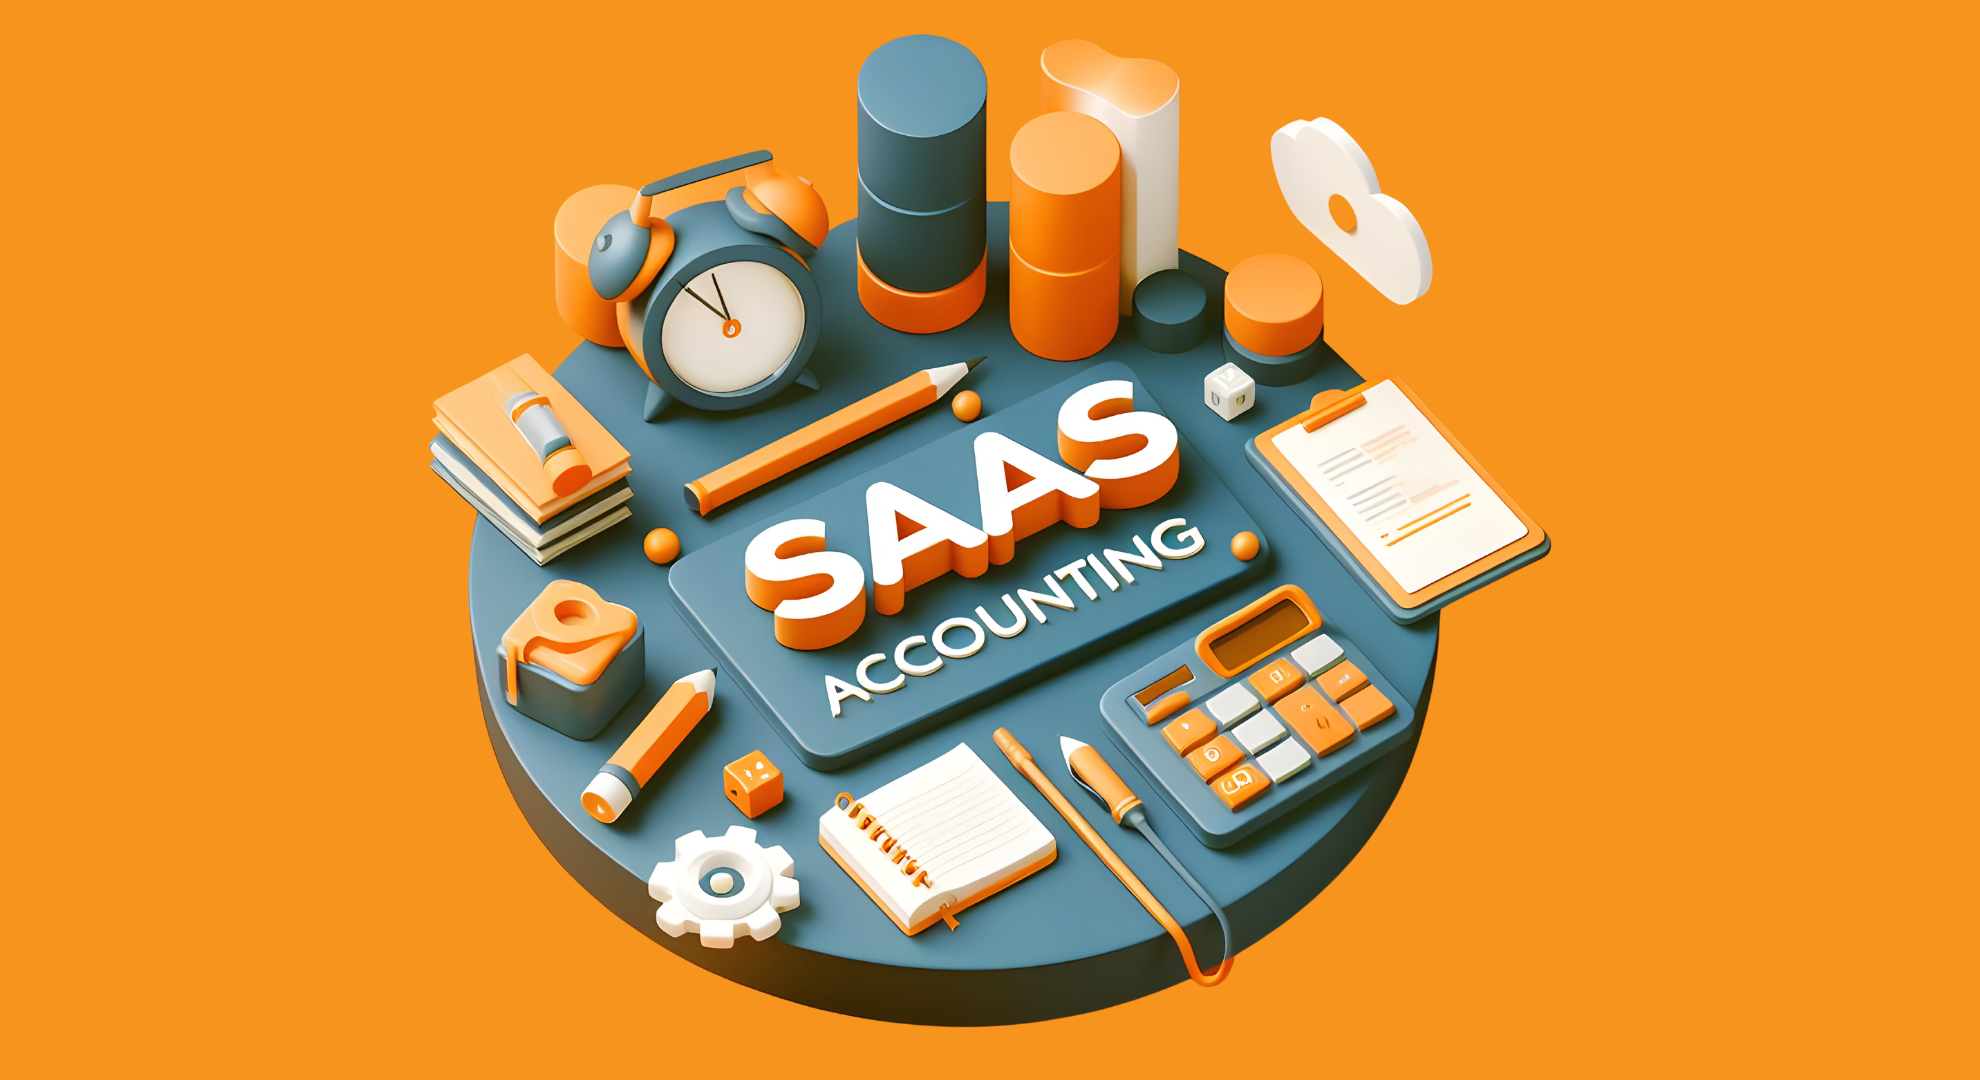 SaaS Accounting